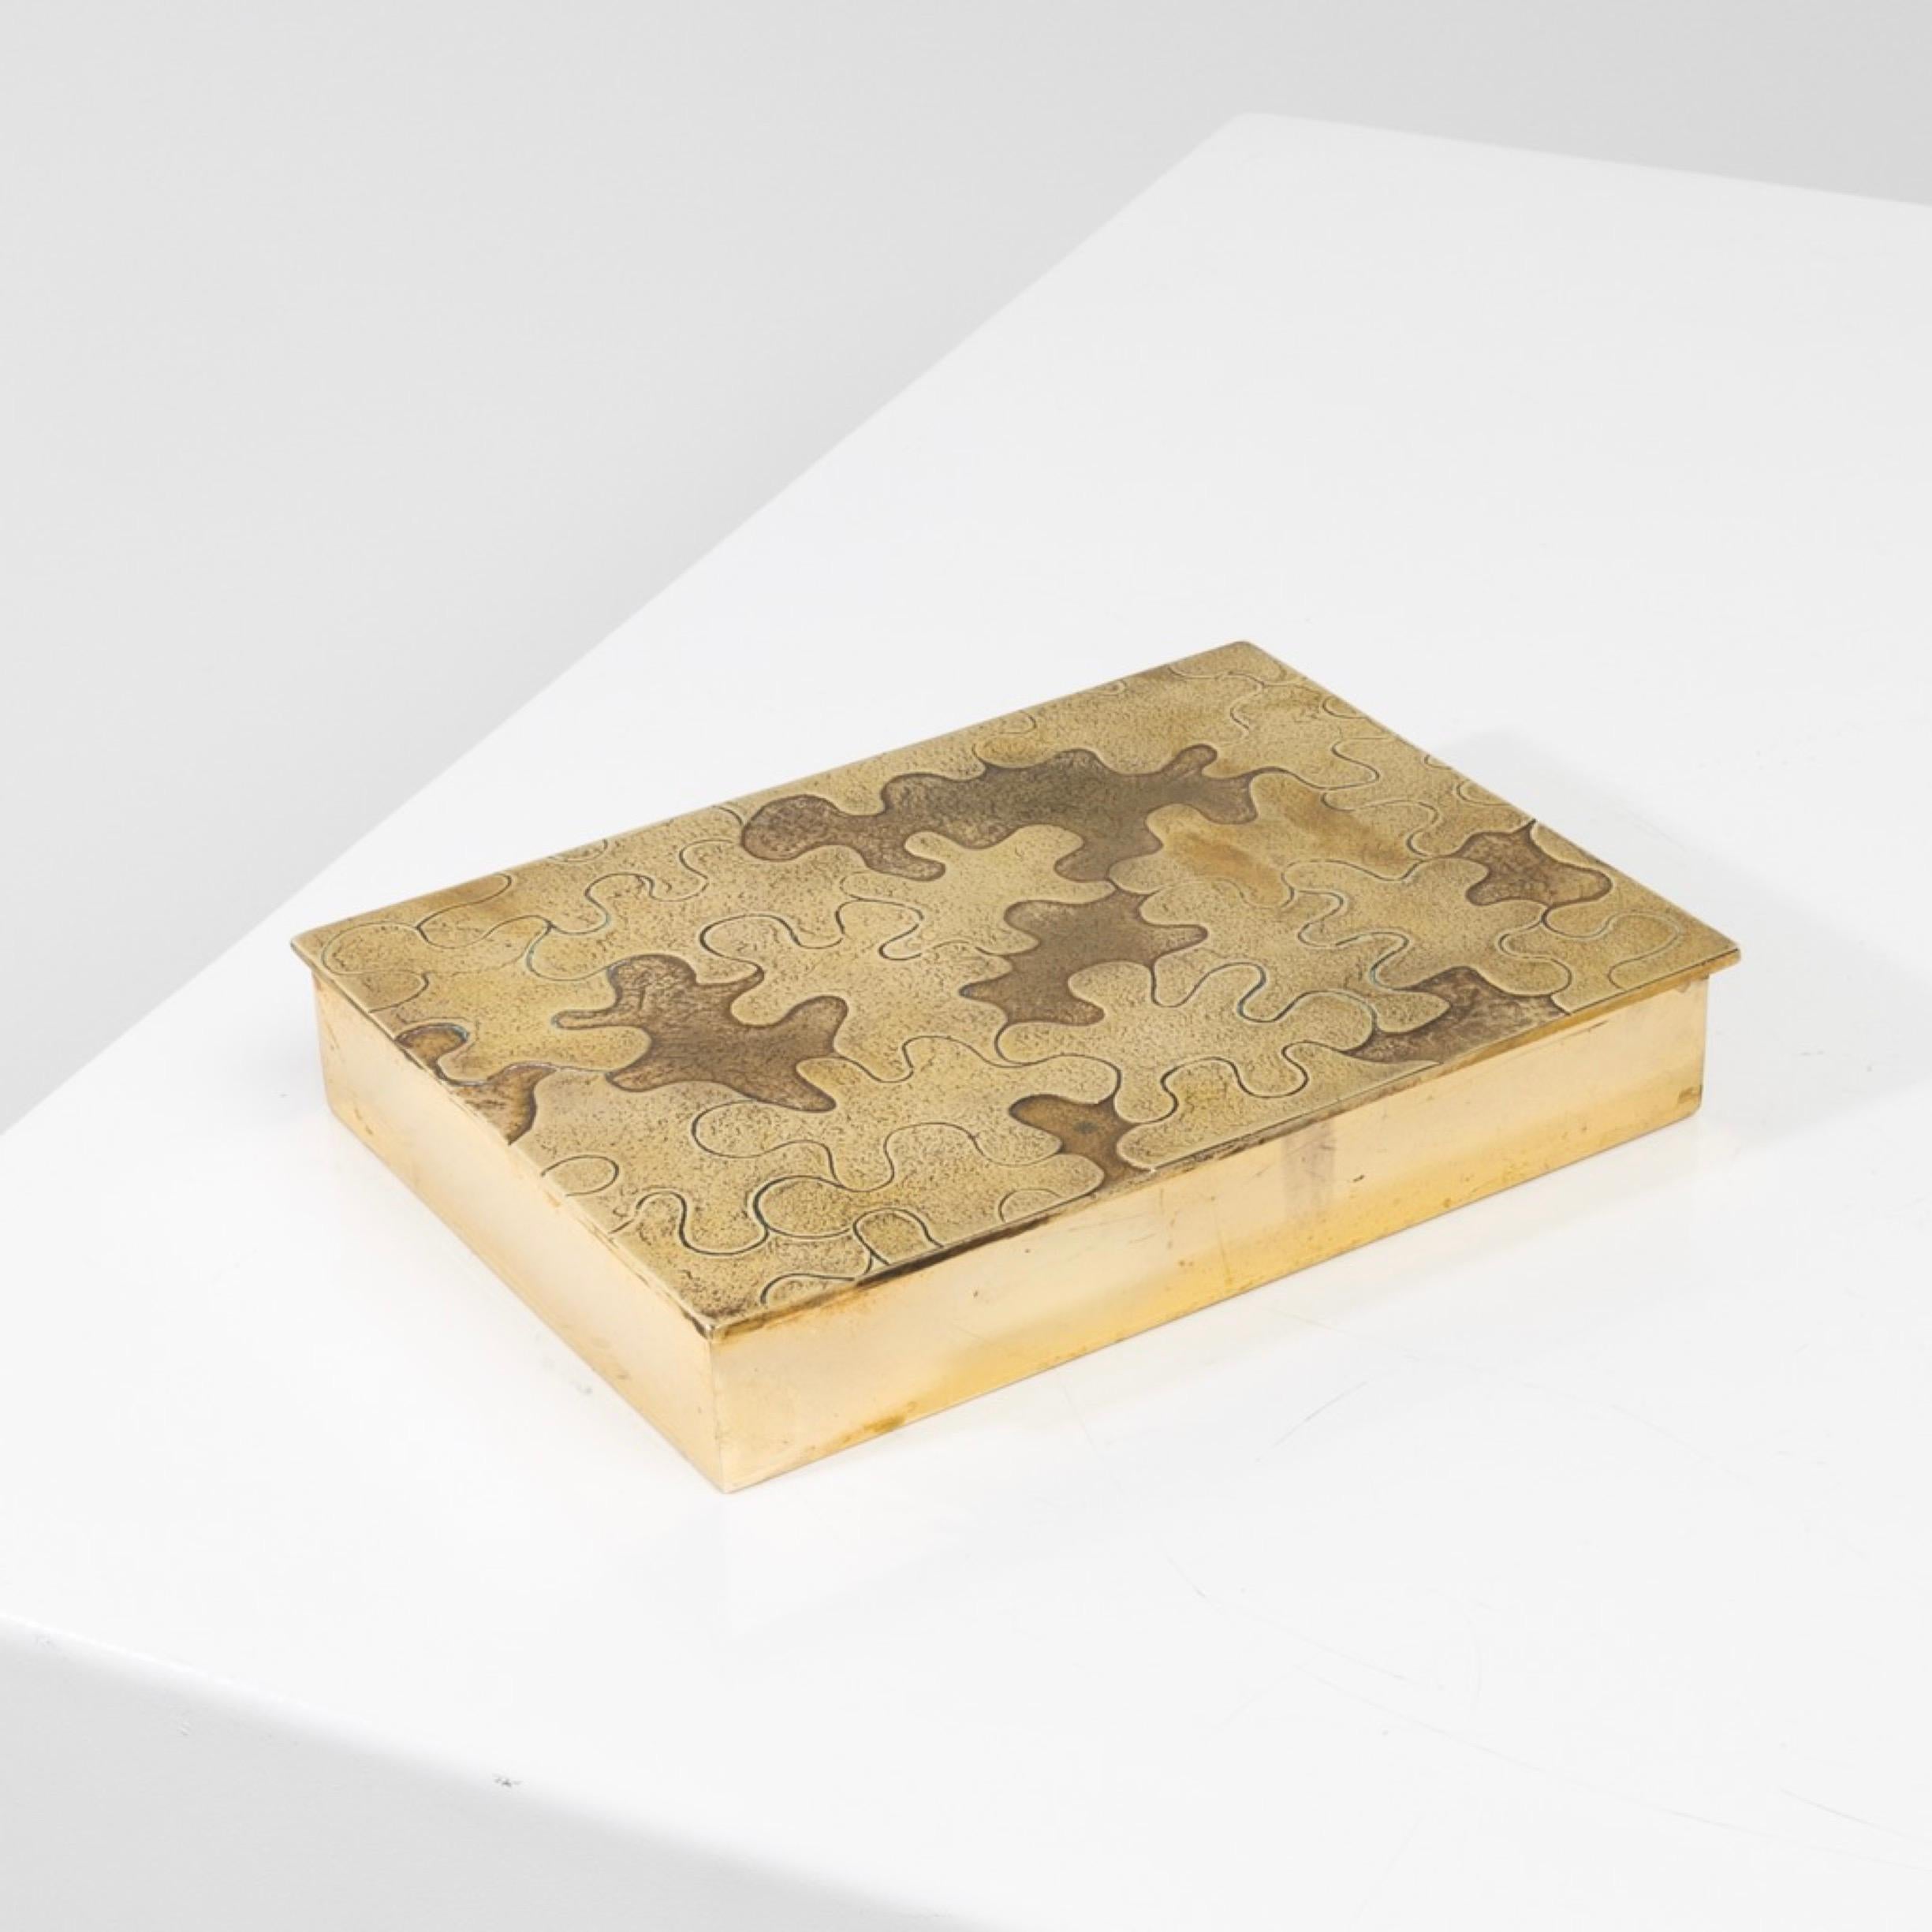 Puzzle von Line Vautrin - Schachtel aus vergoldeter Bronze
Großer und breiter Kasten aus vergoldeter Bronze, dessen Deckel mit einem von Line Vautrin geschnitzten Rätsel versehen ist.
Die gemeißelten Puzzlestücke mit verschiedenen Verzierungen in